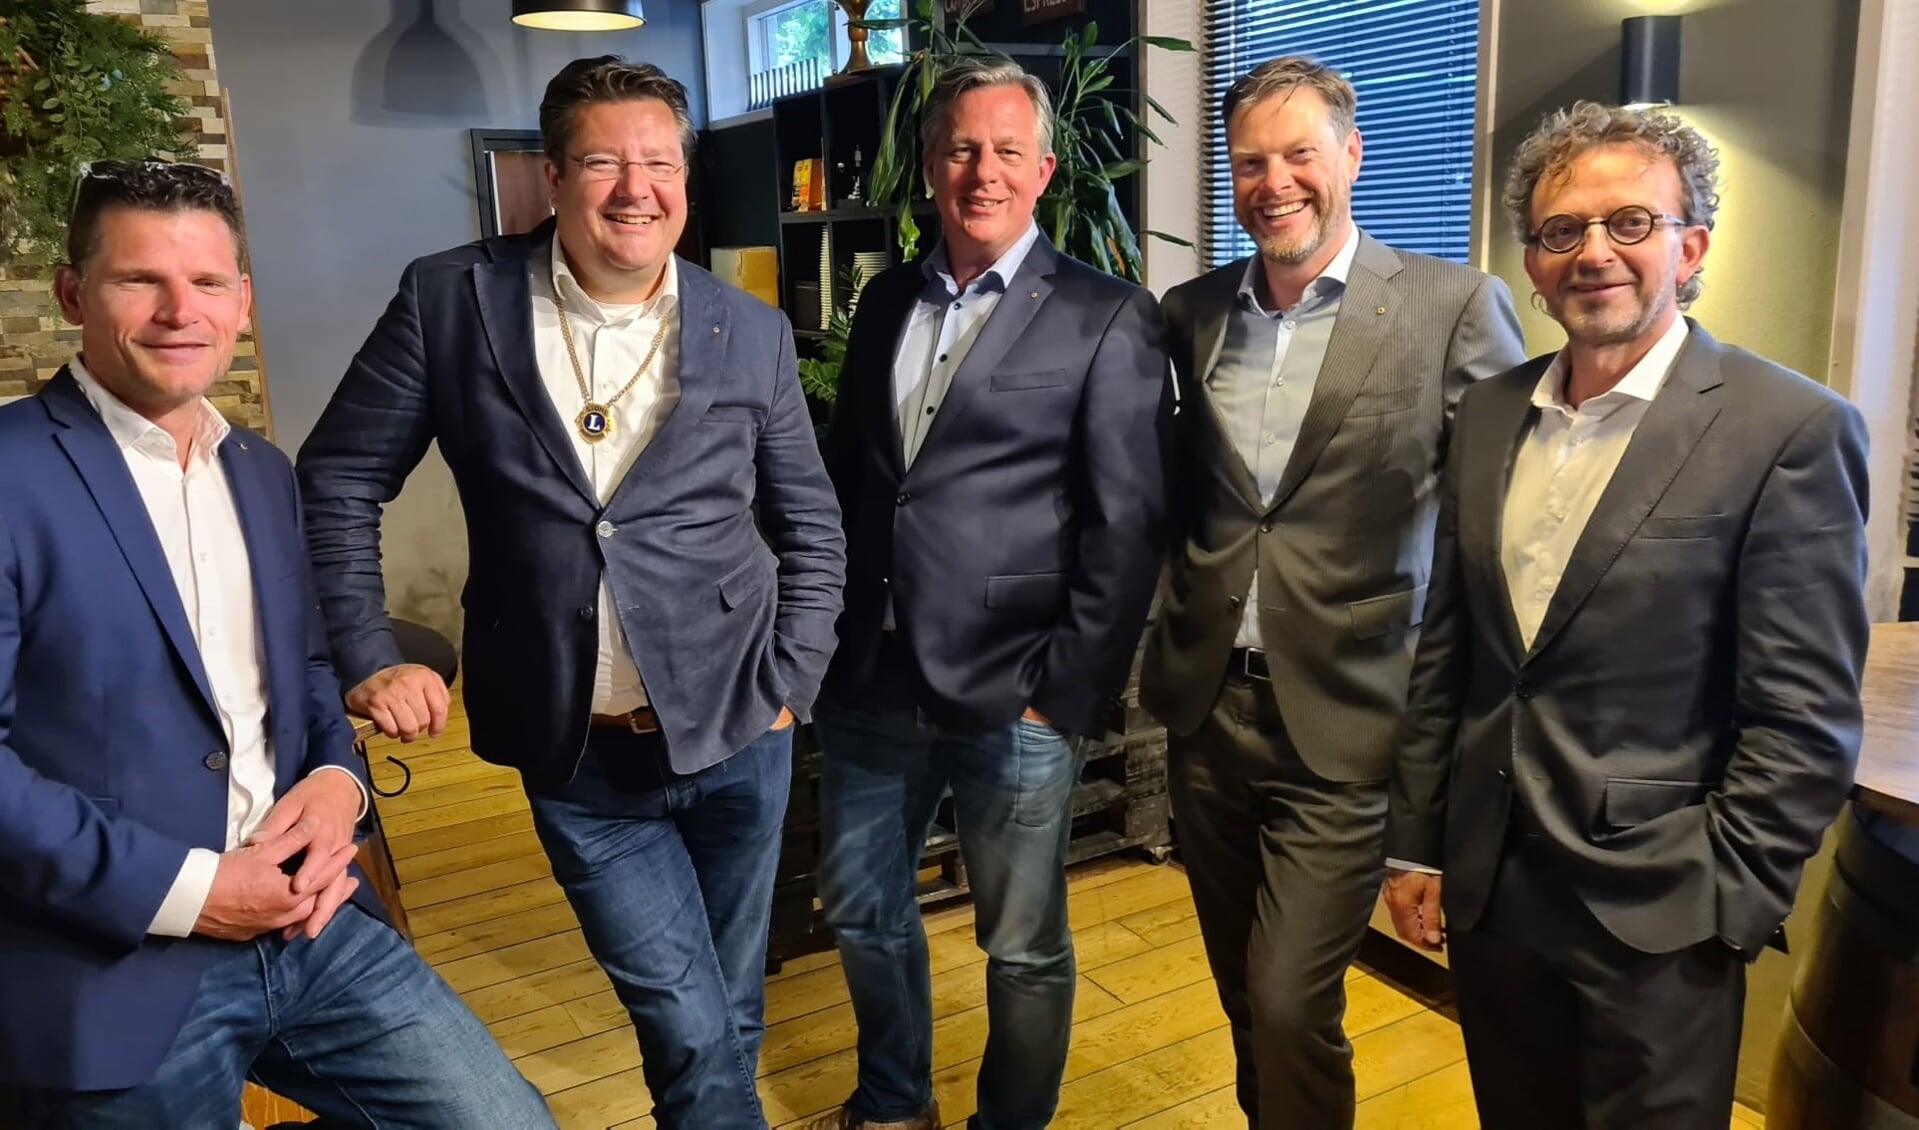 Het nieuwe bestuur van de Lions Club Nootdorp-Pijnacker. Van links naar rechts: Oscar van Buijtene (voormalig voorzitter), Bernard Minderhoud (voorzitter), Dirk-Jan Padmos (secretaris), Sander Olsthoorn (vice-voorzitter) en Johan Eikelenboom (penningmeester).